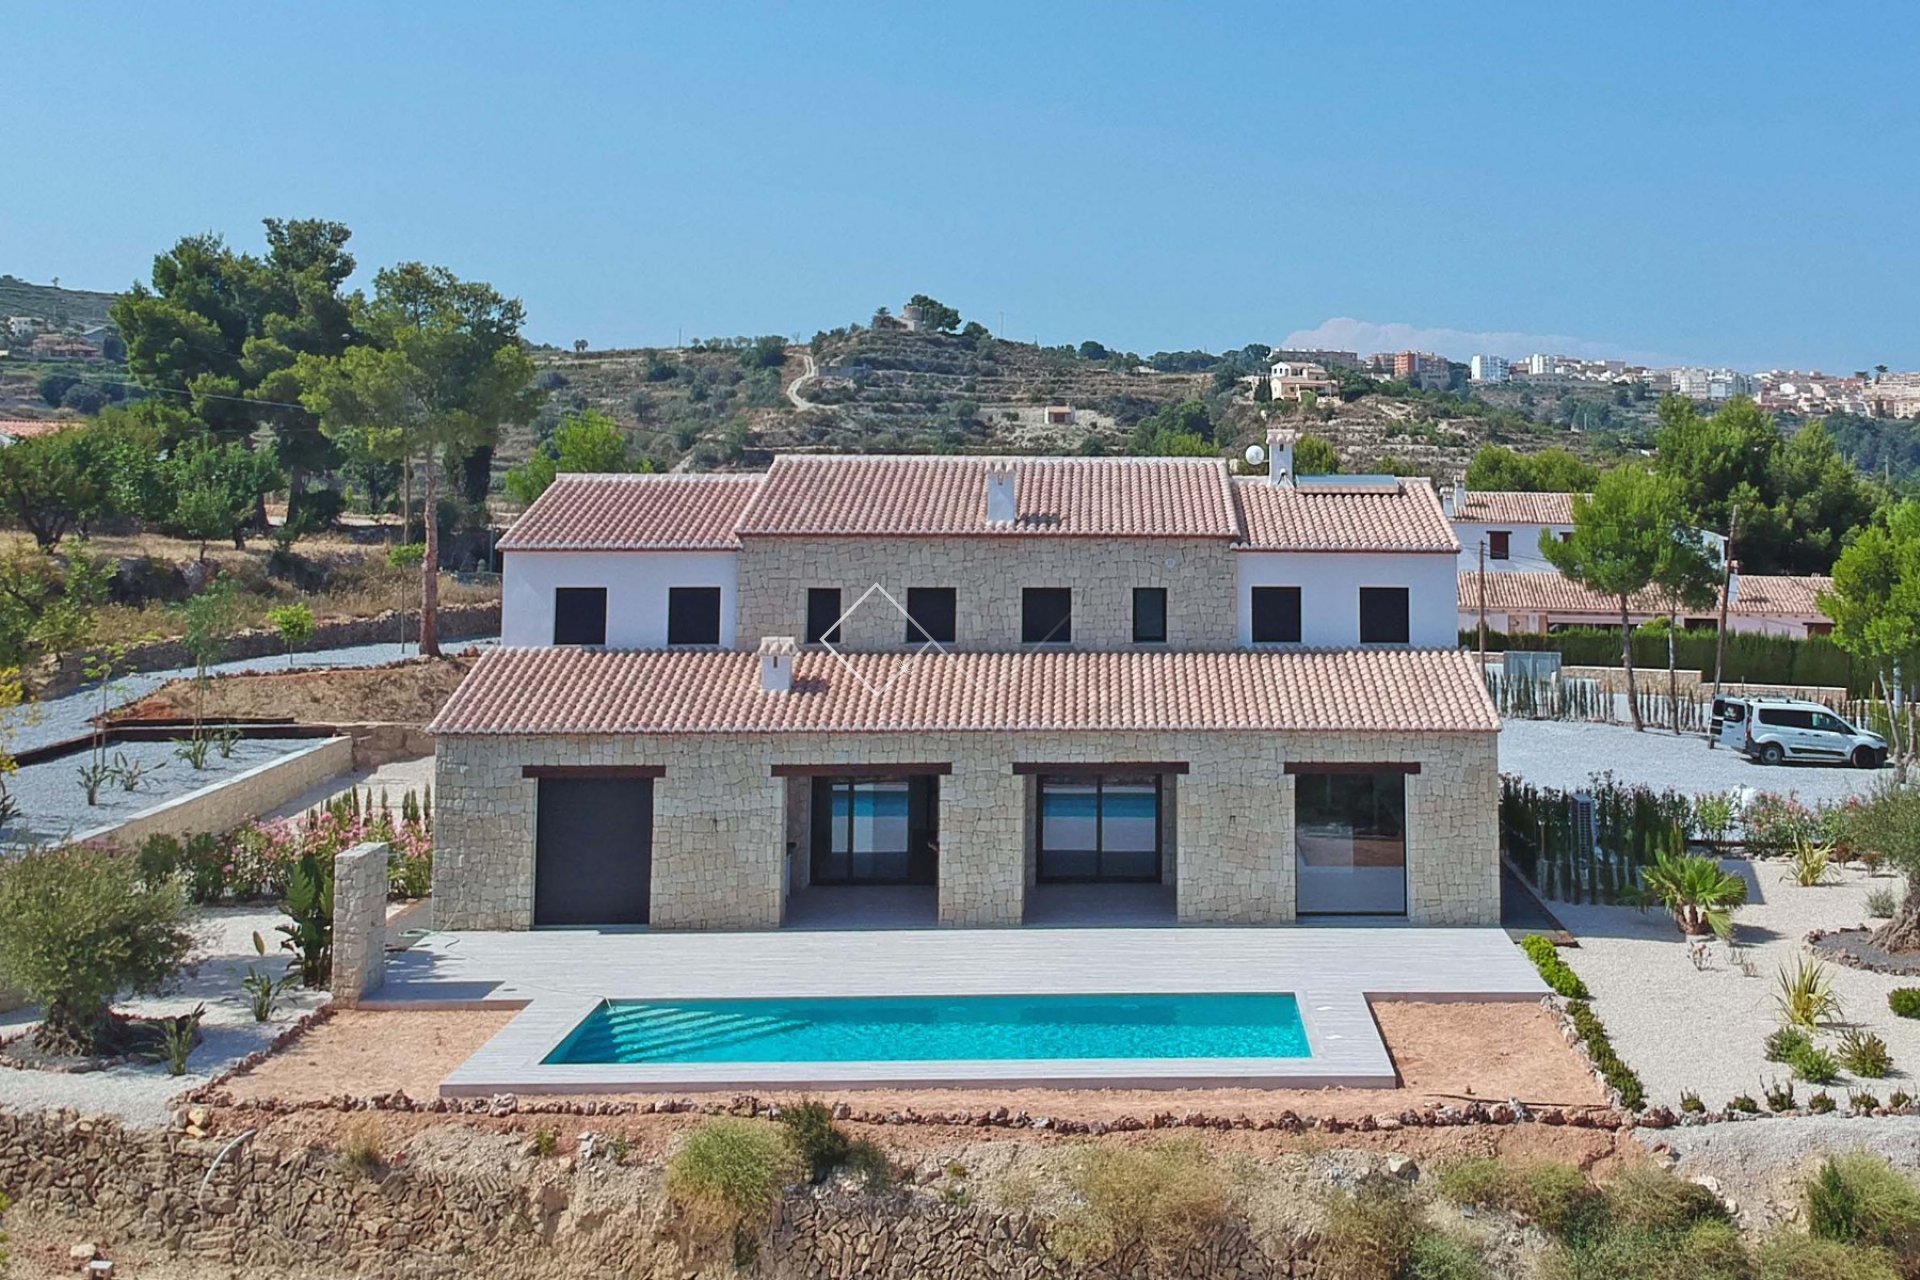 Gran finca con piscina y jardín - Villa de nueva construcción de estilo finca con impresionantes vistas al mar en venta en Benissa